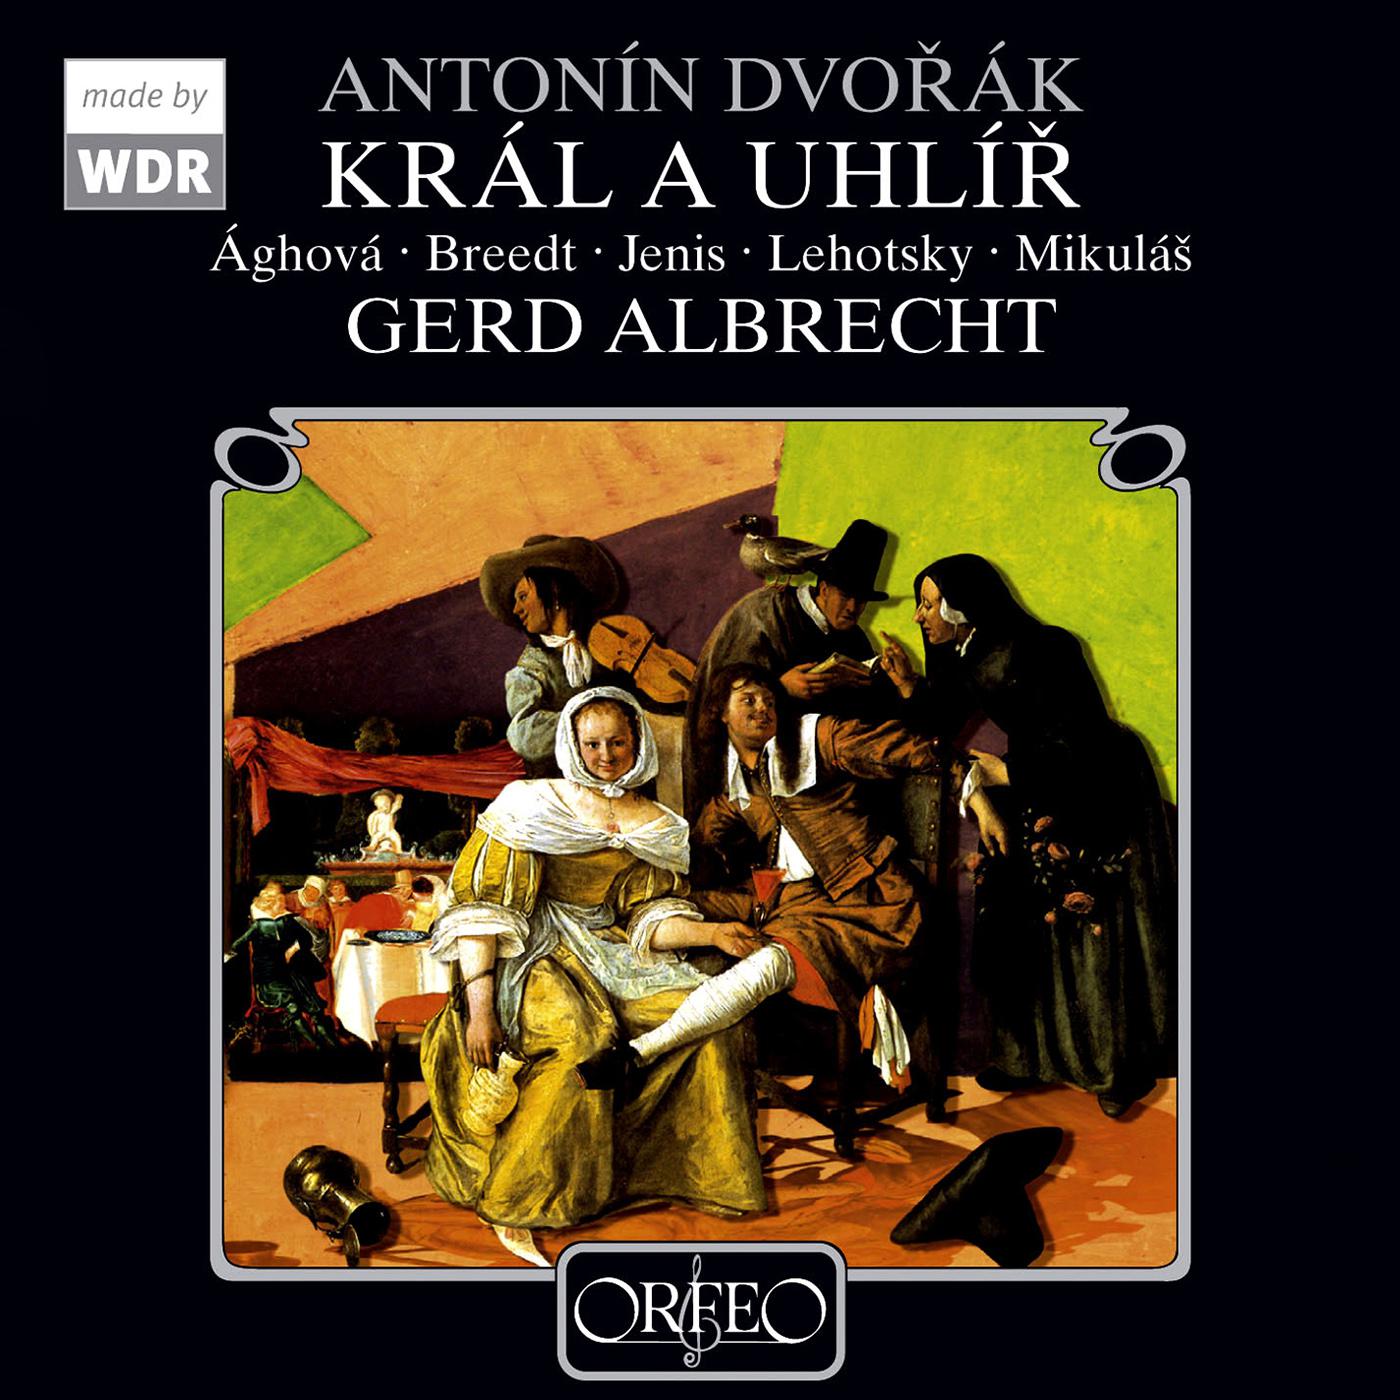 Gerd Albrecht - Kral a uhlir (King and Charcoal Burner), B. 21:Act I Scene 8: Dousek vina k teto zverine (Anna, Matej, Konig, Kohlerinnen und Kohler)